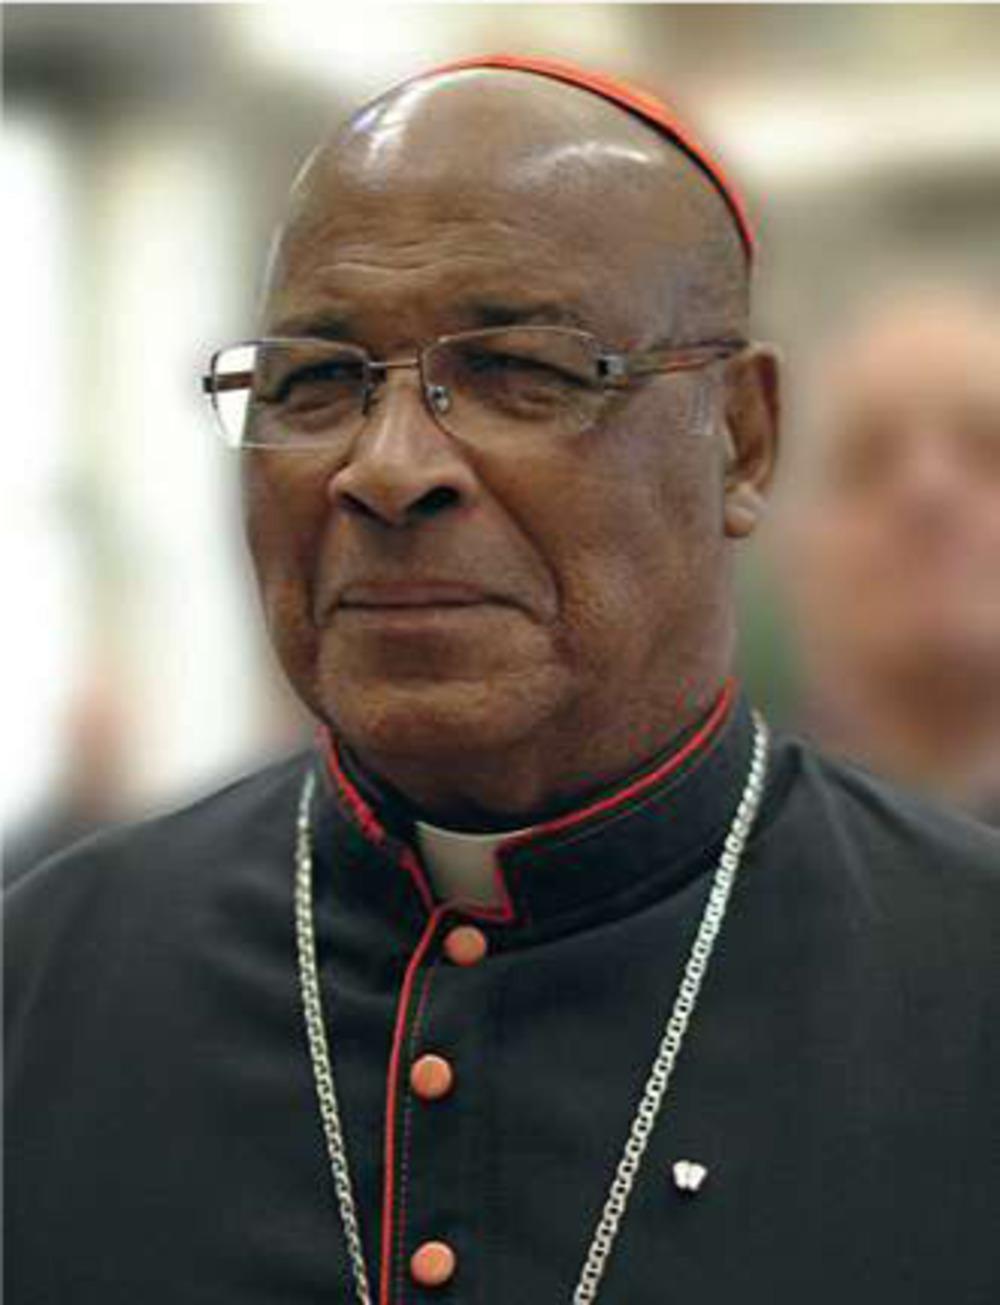 De Zuid-Afrikaanse kardinaal Wilfrid Fox Napier kan de liberale toon van de laatste synode maar matig appreciëren